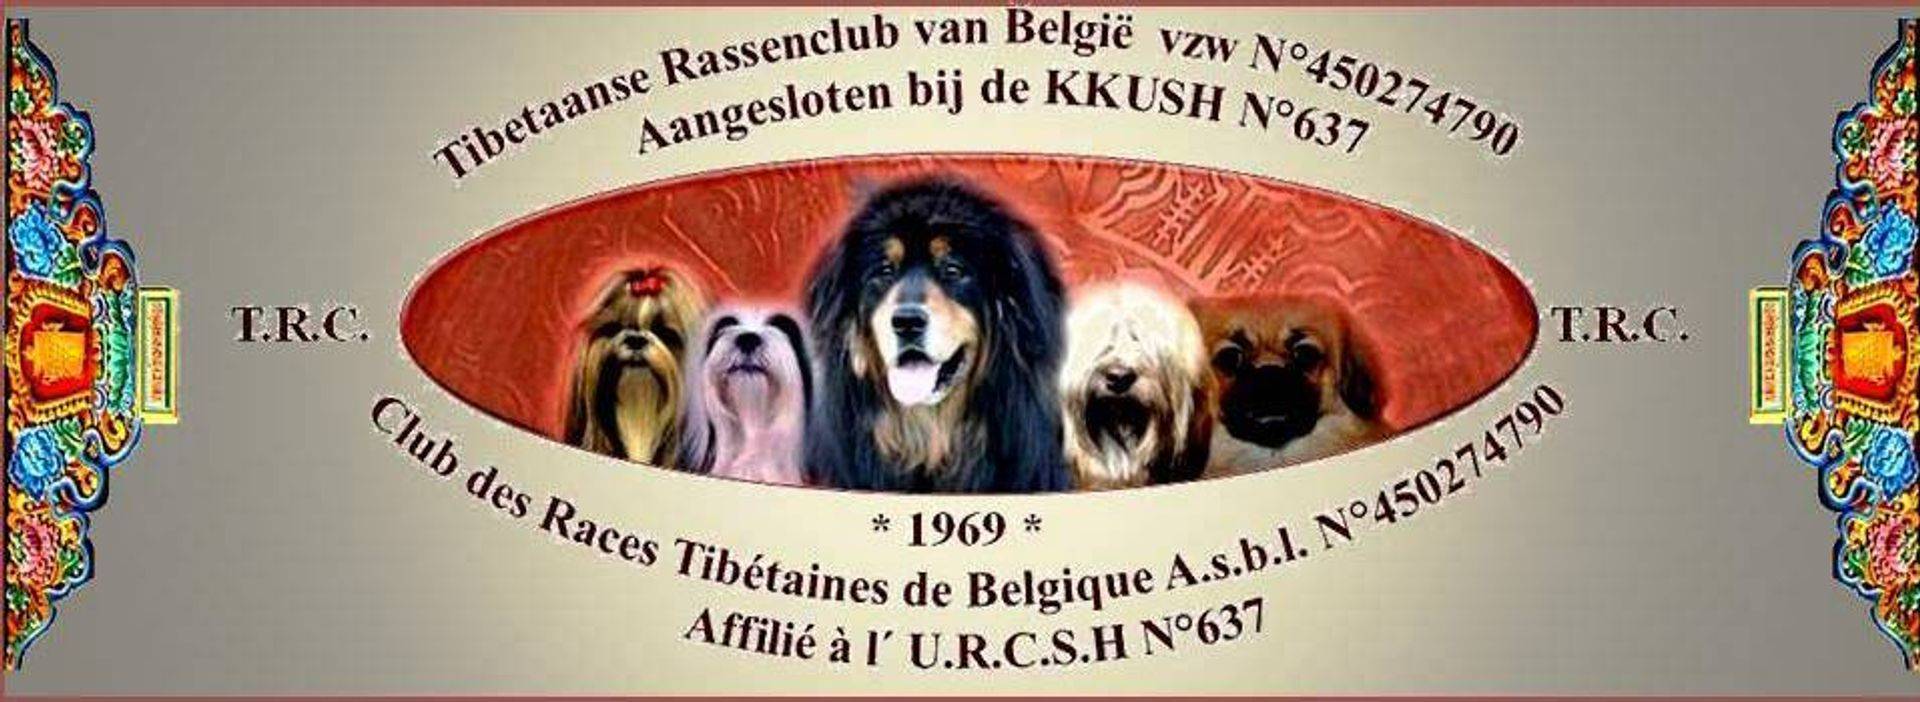 Tibetaanse Rassenclub van België vzw